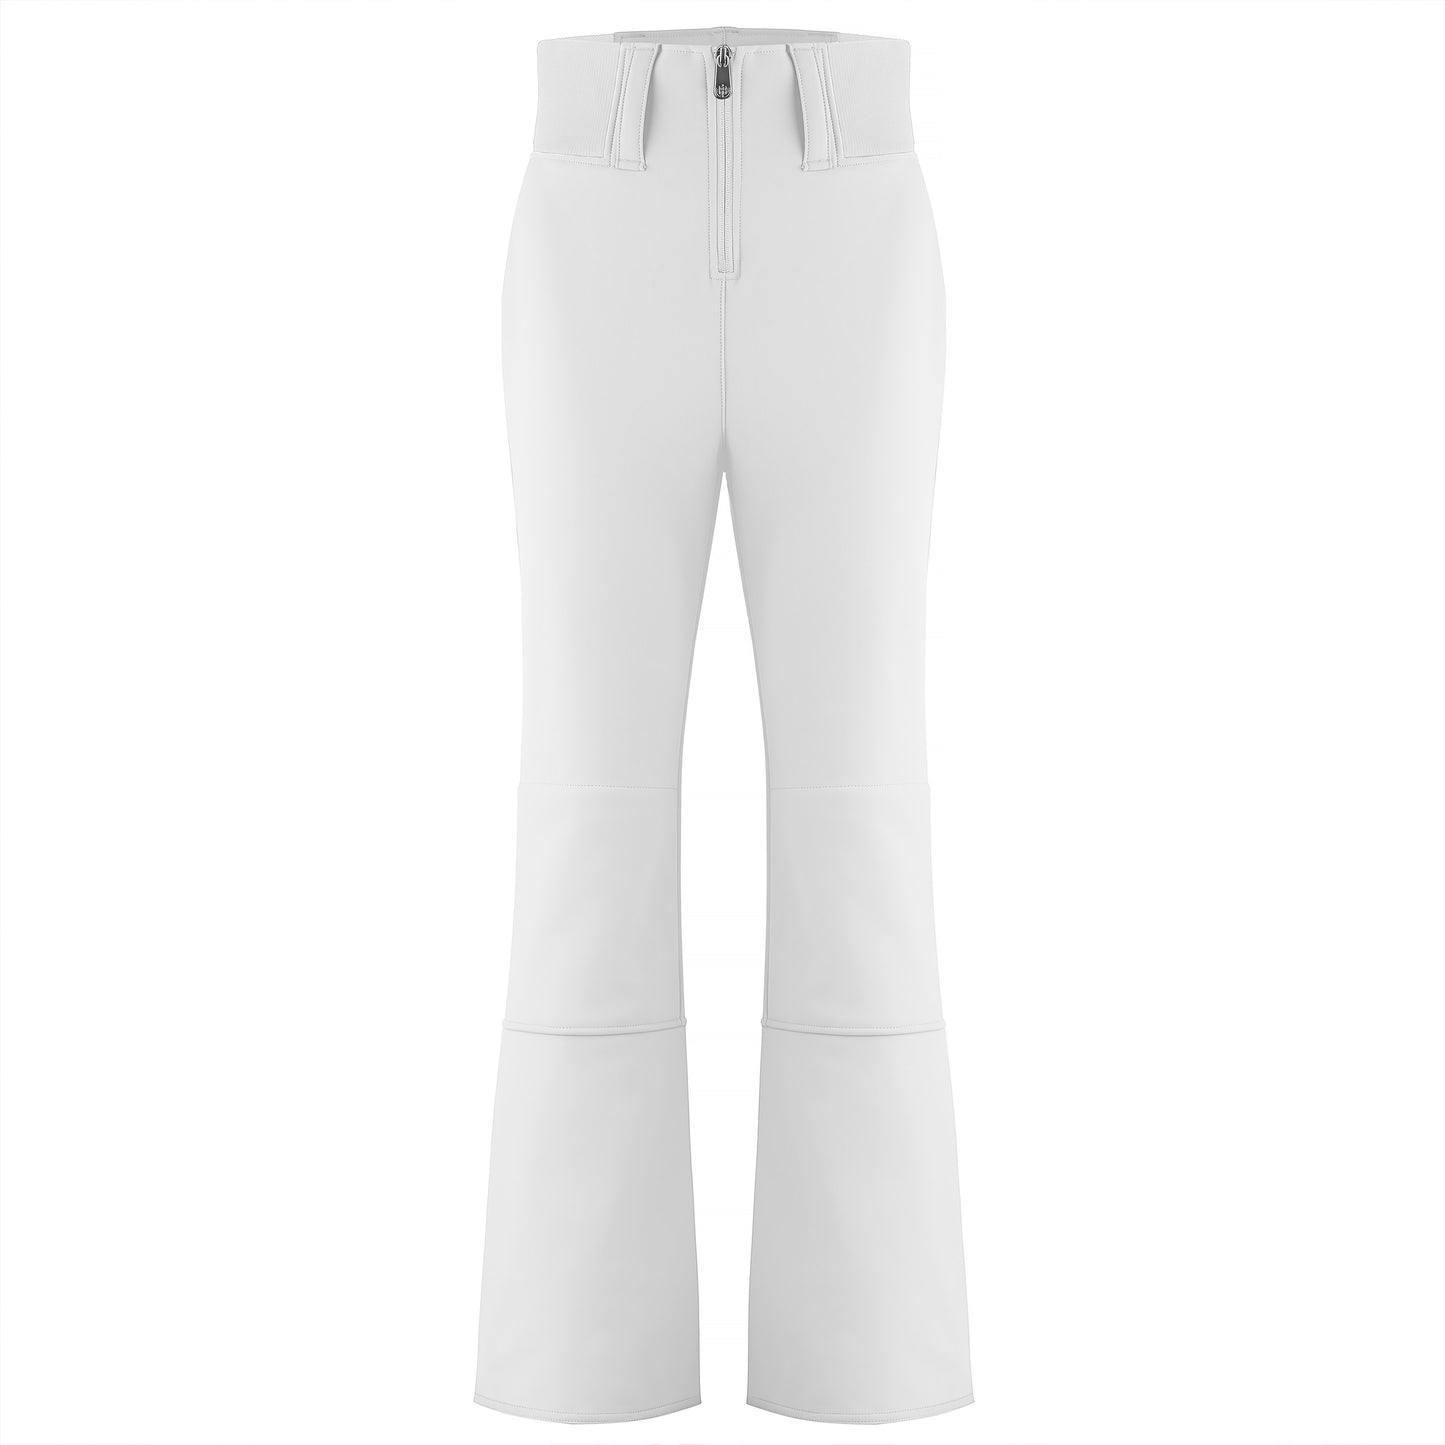 Poivre Blanc Women's soft shell stretch ski pants in White 1121